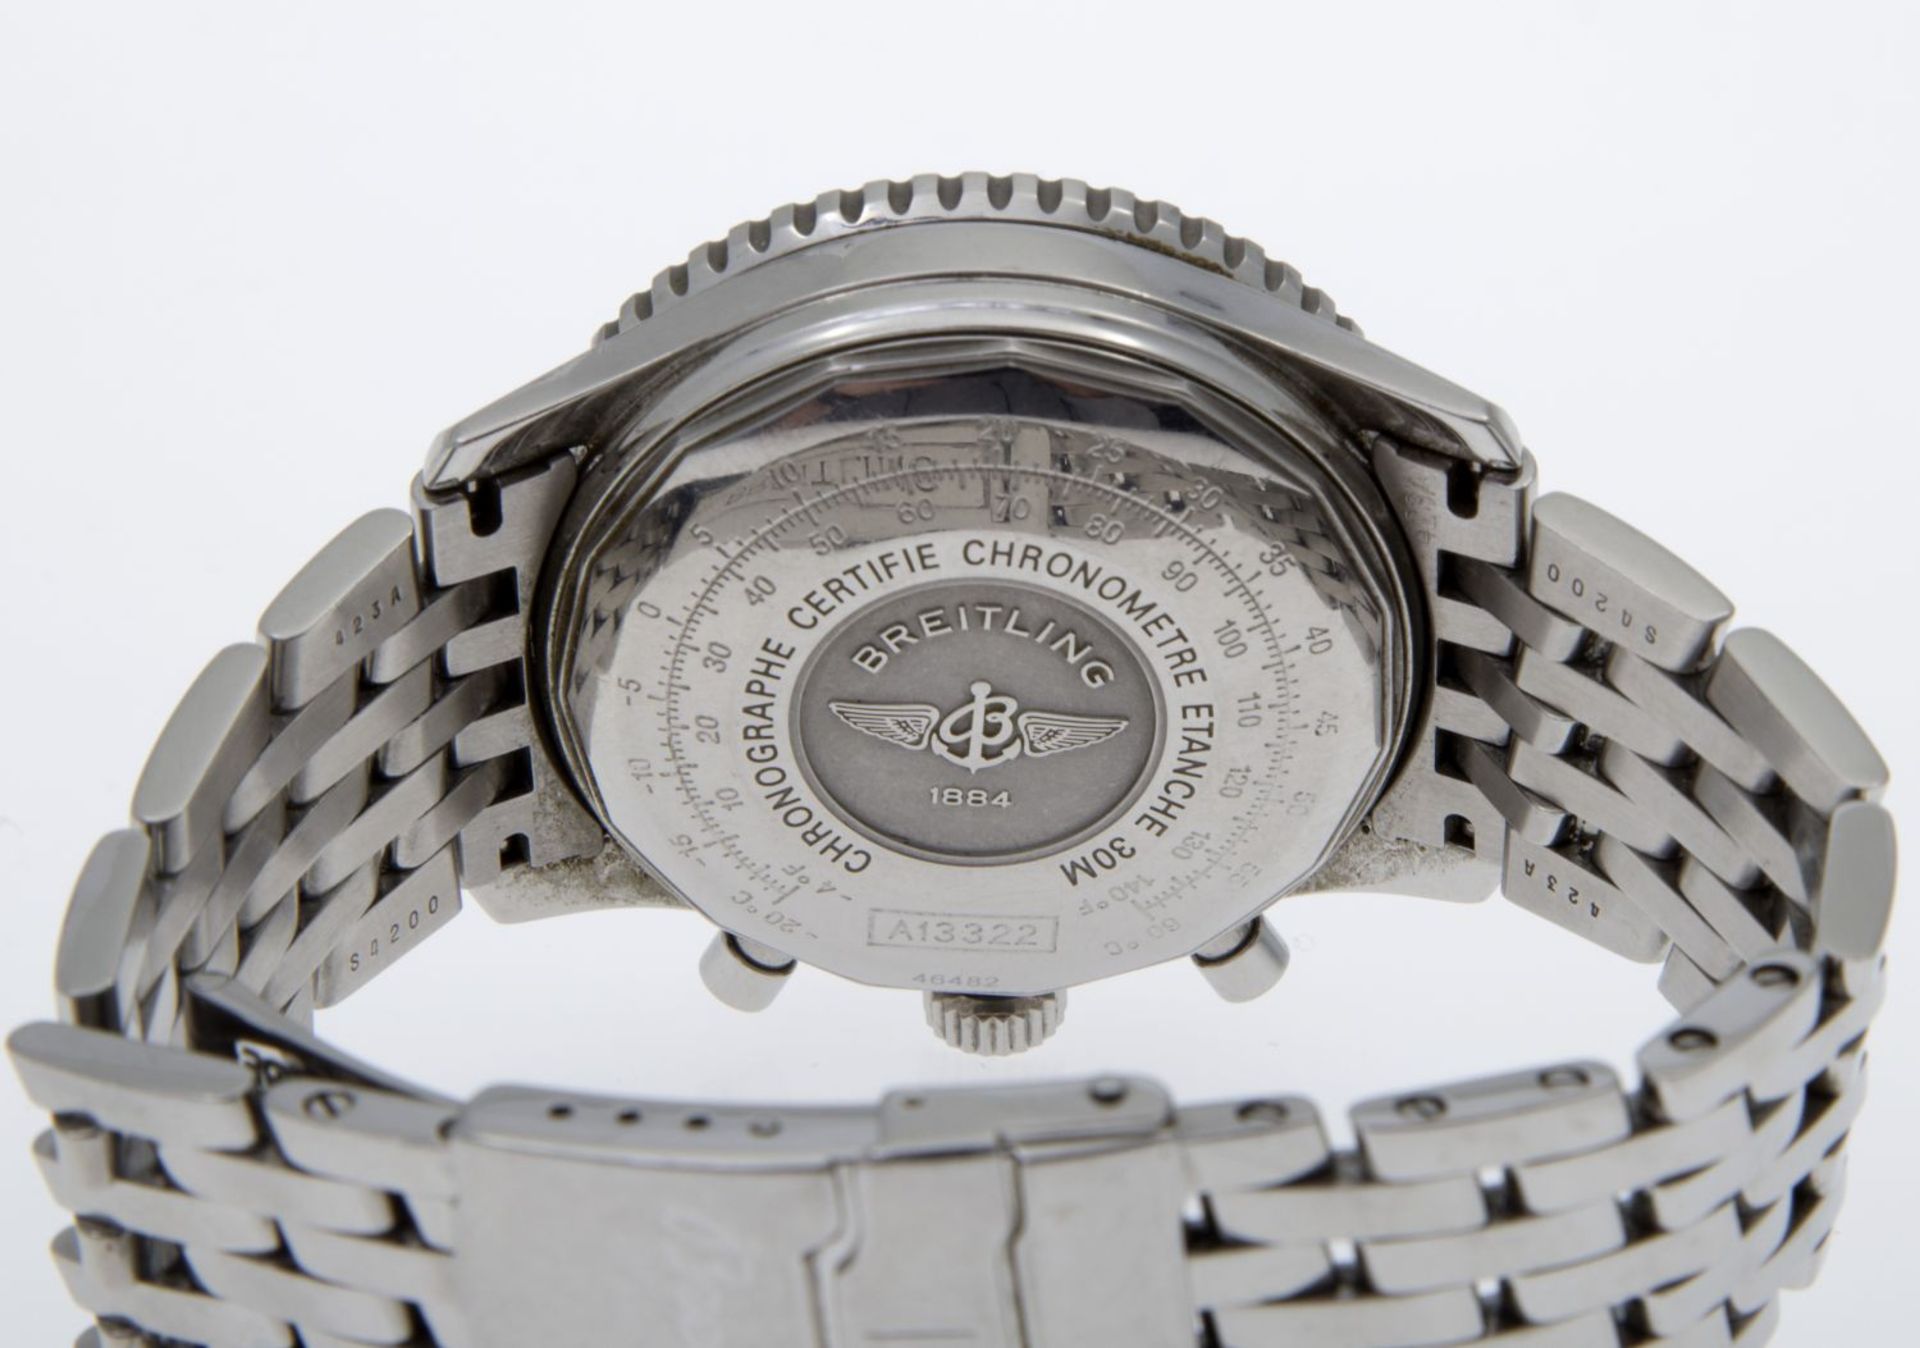 Automatischer Breitling-Chronograph "Navitimer" - Bild 3 aus 3